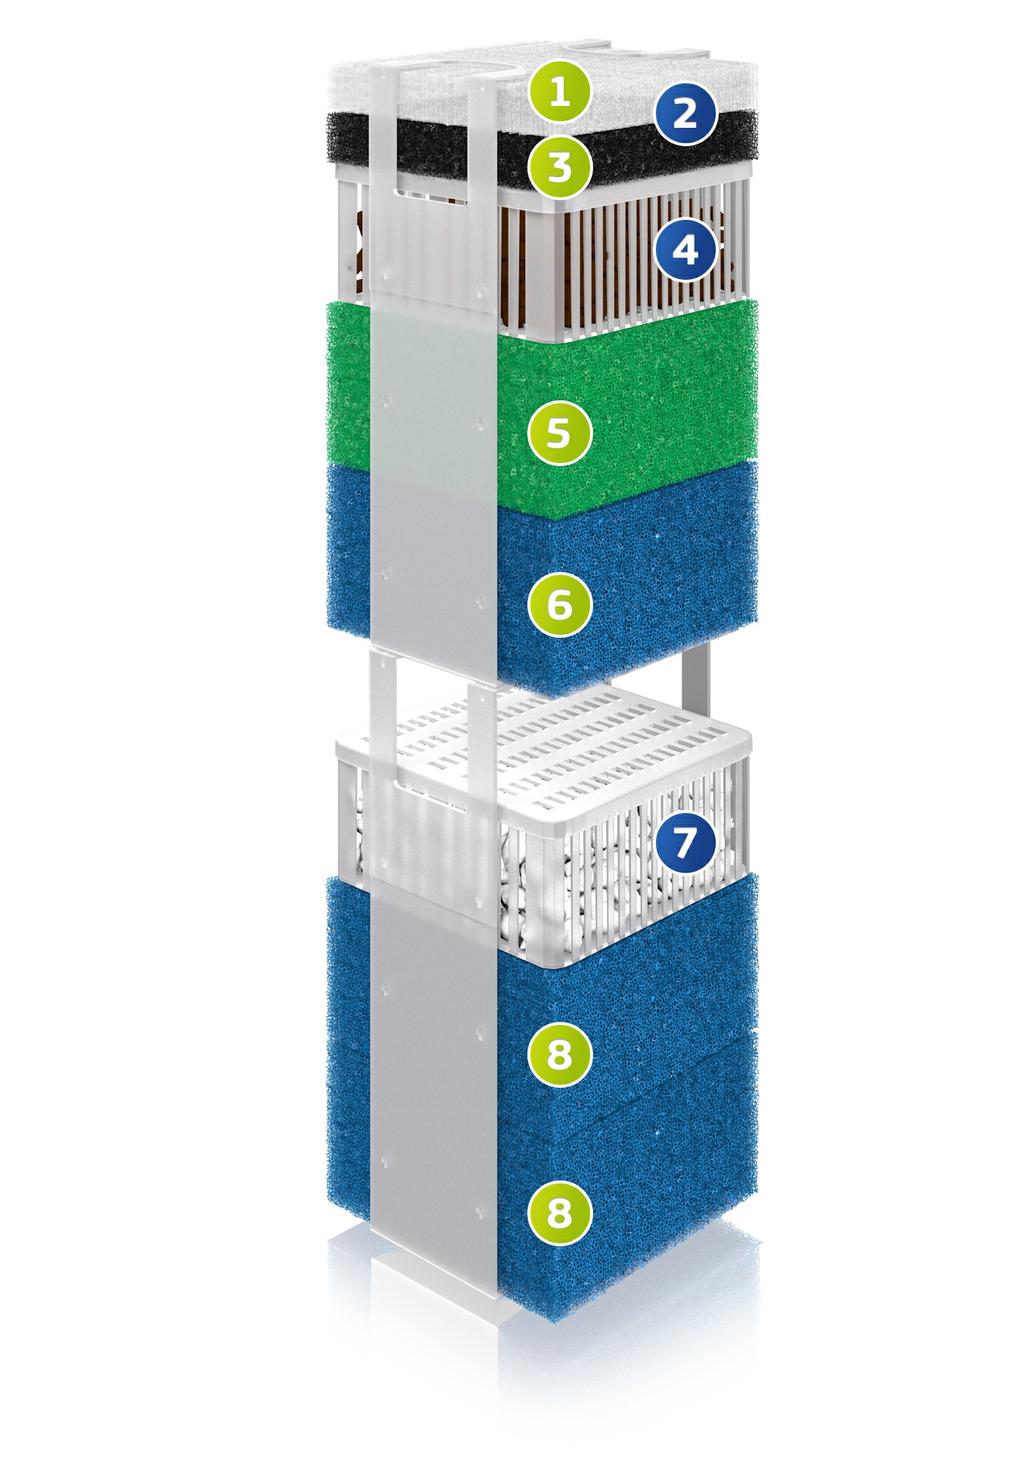 Ogni sistema di filtraggio Bioflow è equipaggiato alla consegna con cinque elementi filtranti di qualità pregiata: 1.